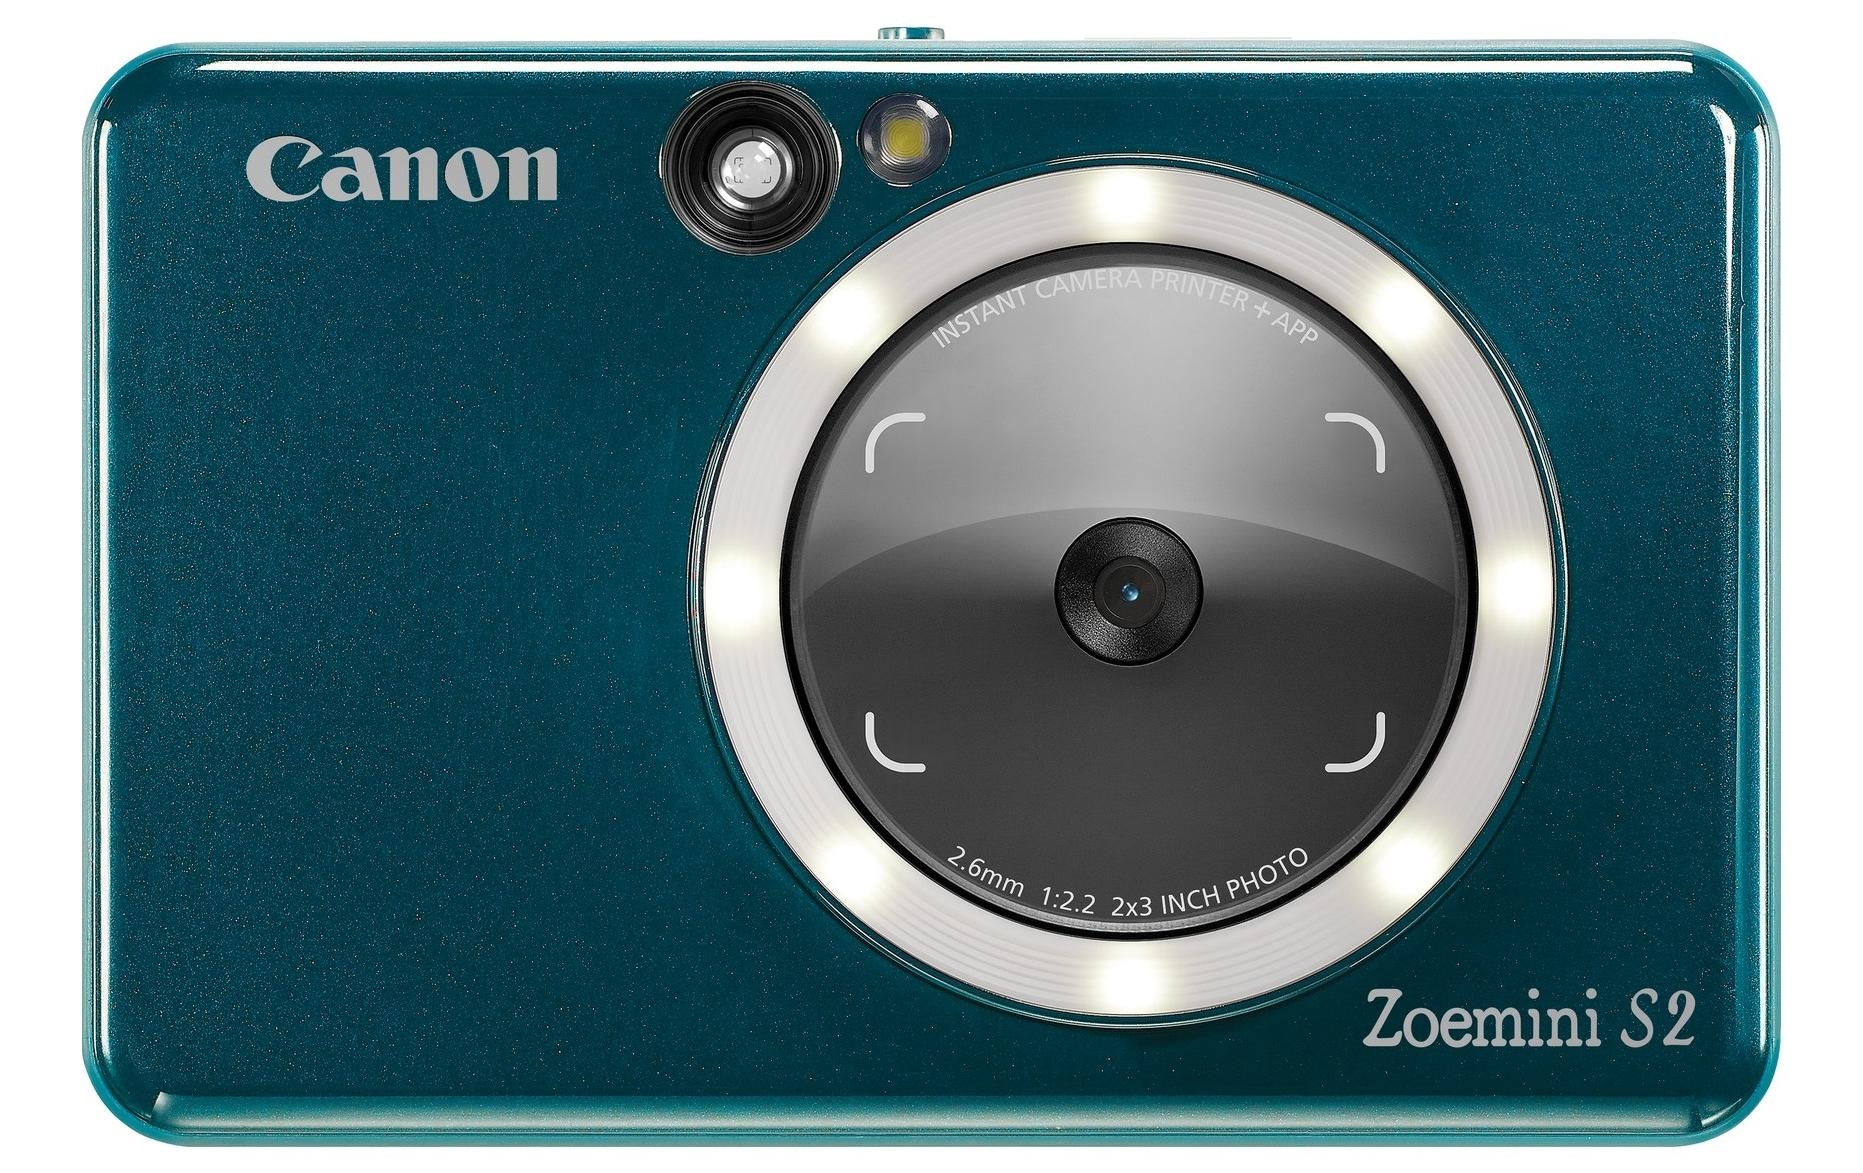 Canon Sofortbildkamera »Canon Sofortbildkamera Zoemini S2«